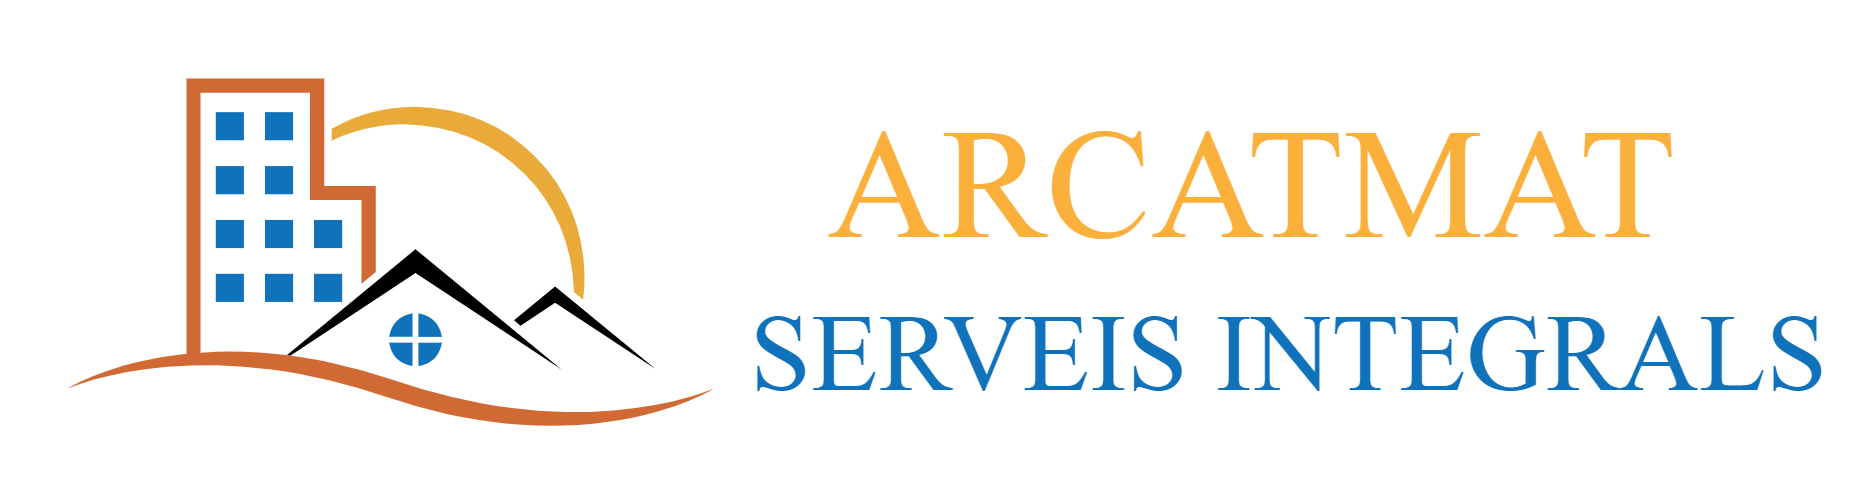 Logo de Arcatmat Serveis integrals